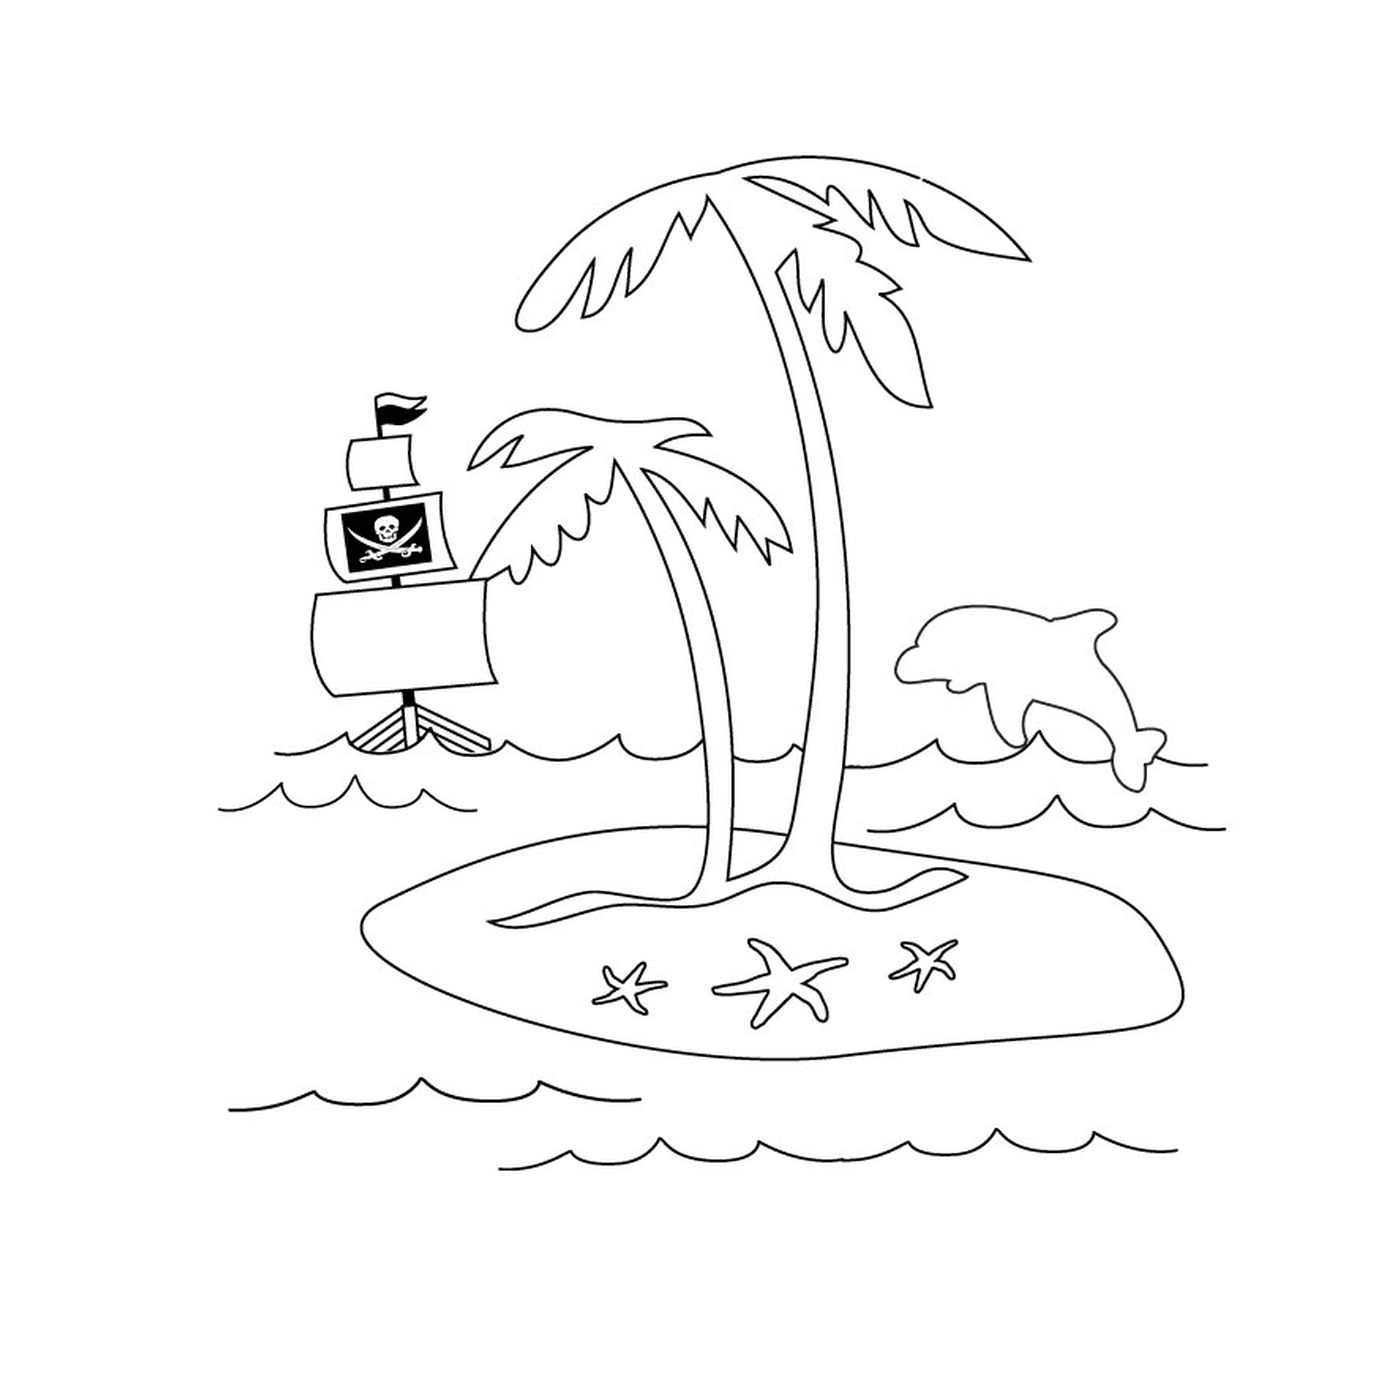  एक खजूर के पेड़ और एक जहाज के साथ समुद्री द्वीप 